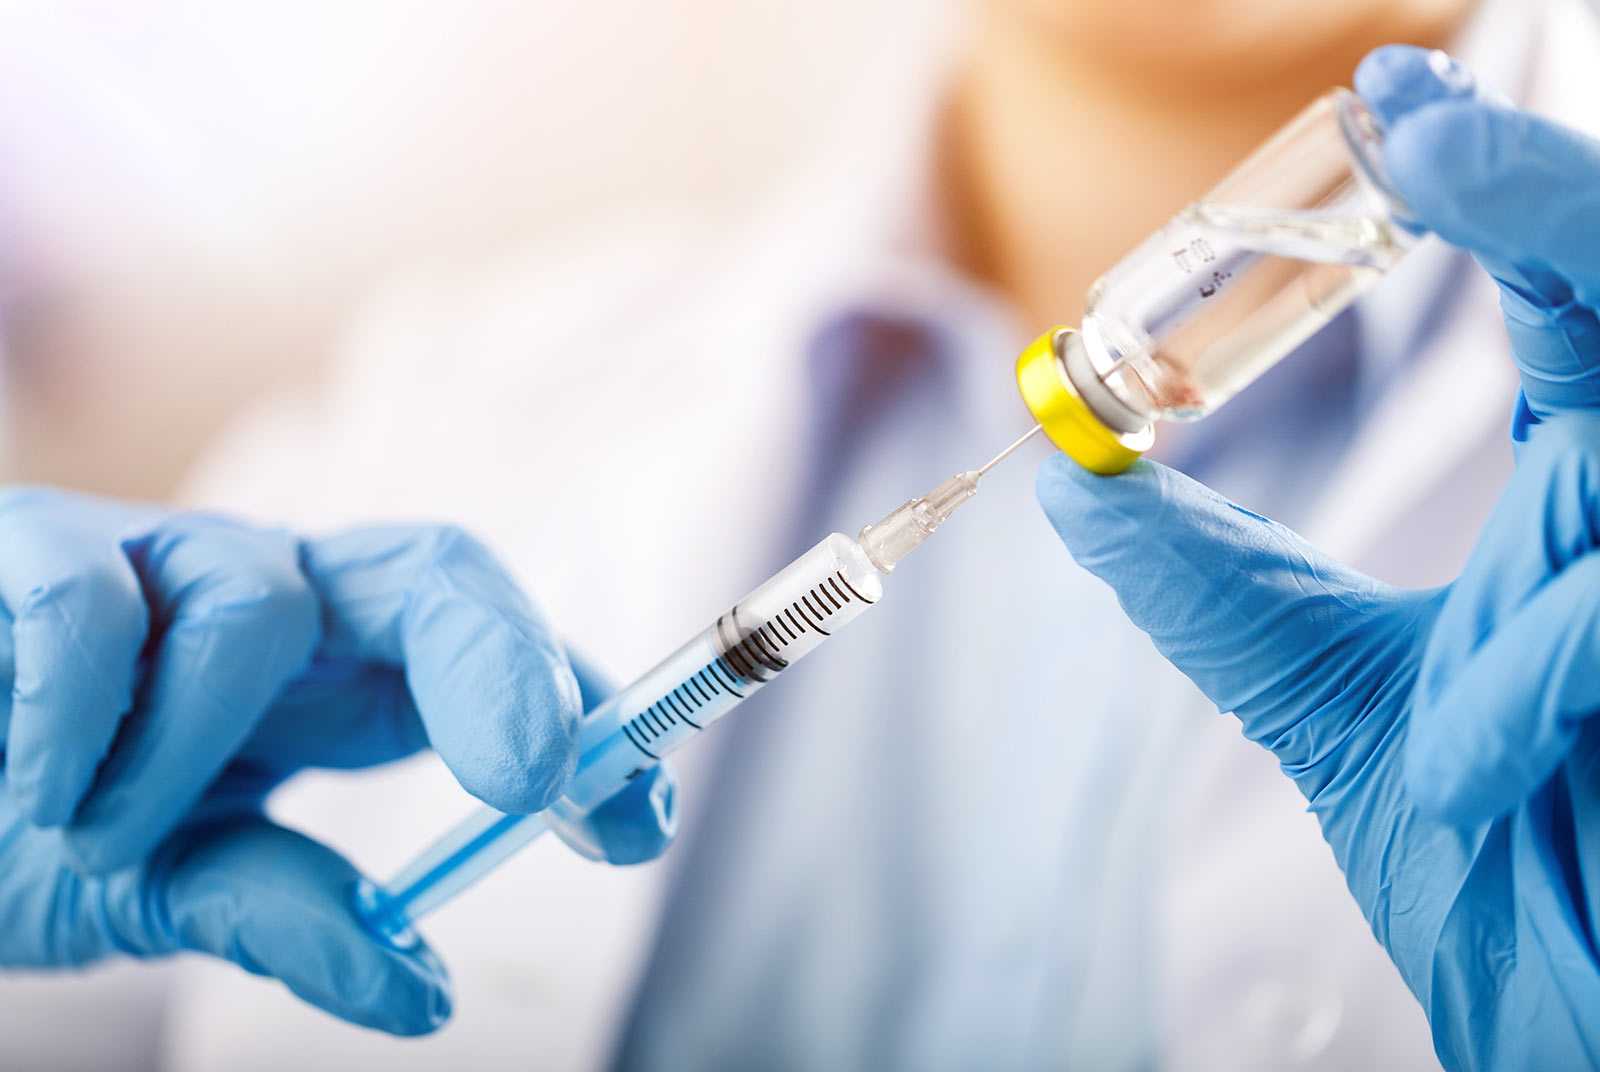 Warga diperingatkan untuk segera mencari pertolongan medis apabila muncul 2 gejala ini setelah menerima suntikan vaksinasi. Sumber: Associated Press